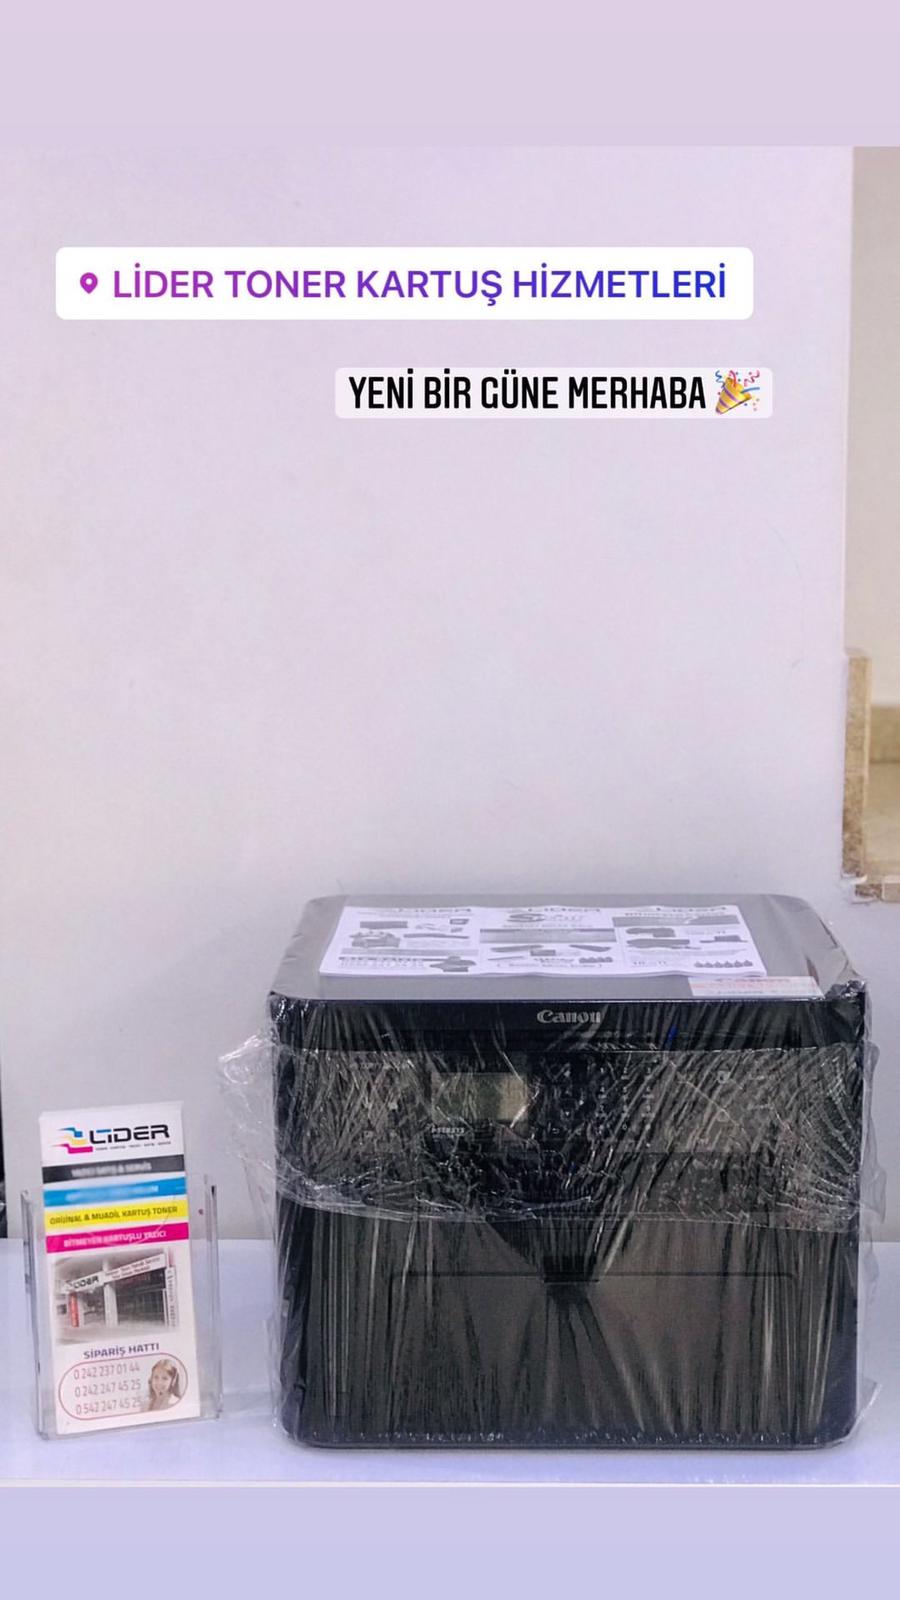  Antalya yazıcı tamiri toner kartuş dolum antalya yazıcı servisi